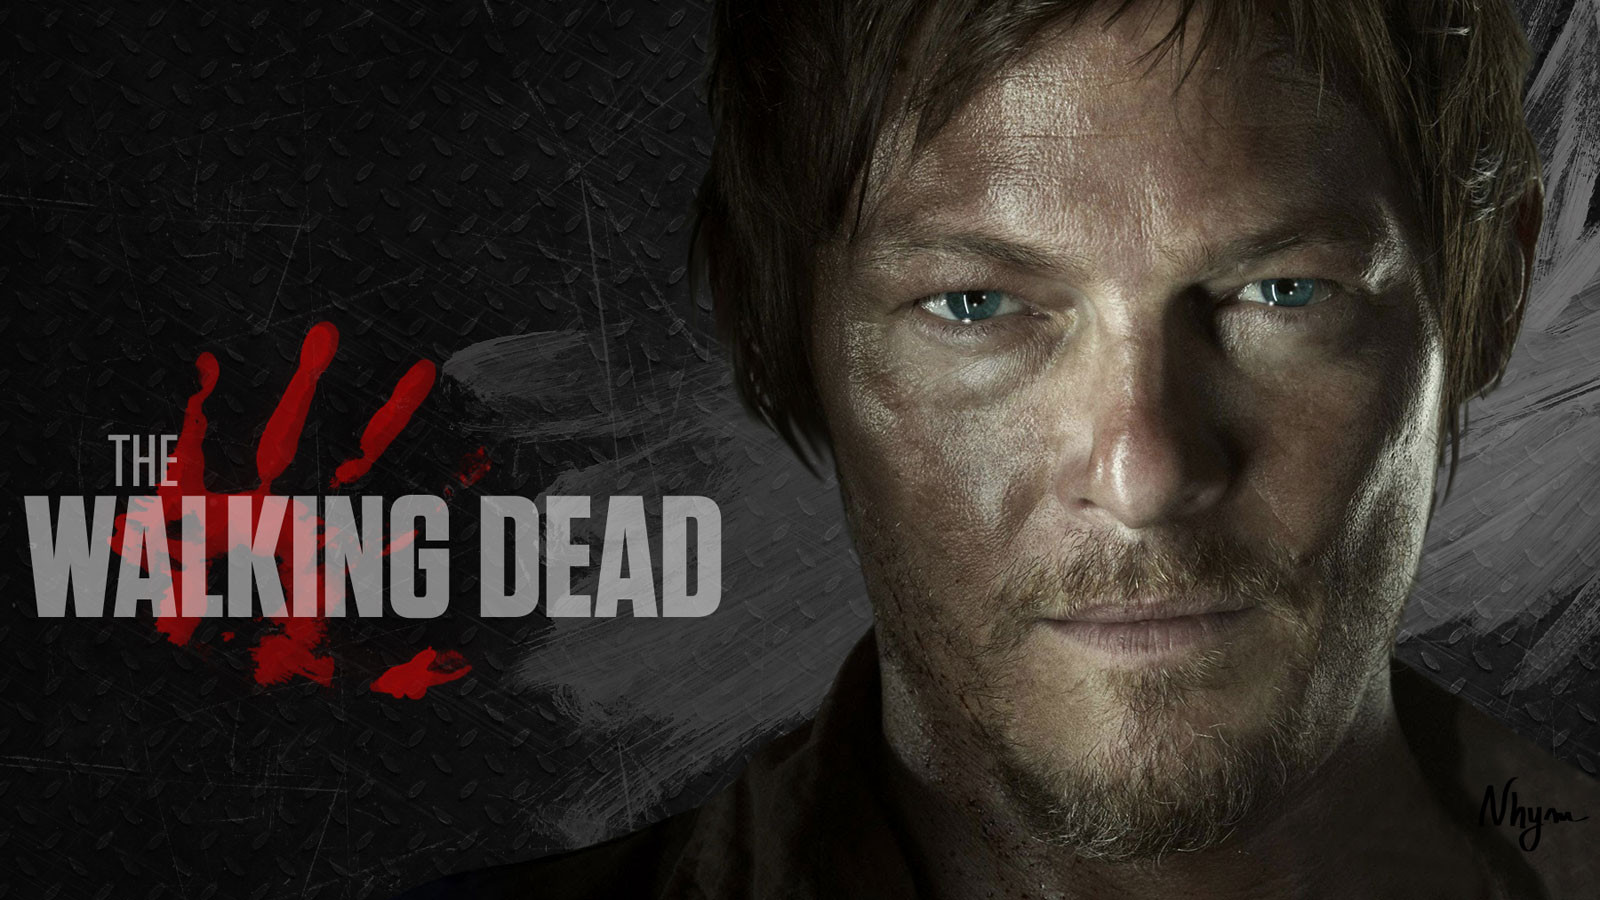 Nhan vat Daryl trong  Walking Dead  la nguoi dong tinh